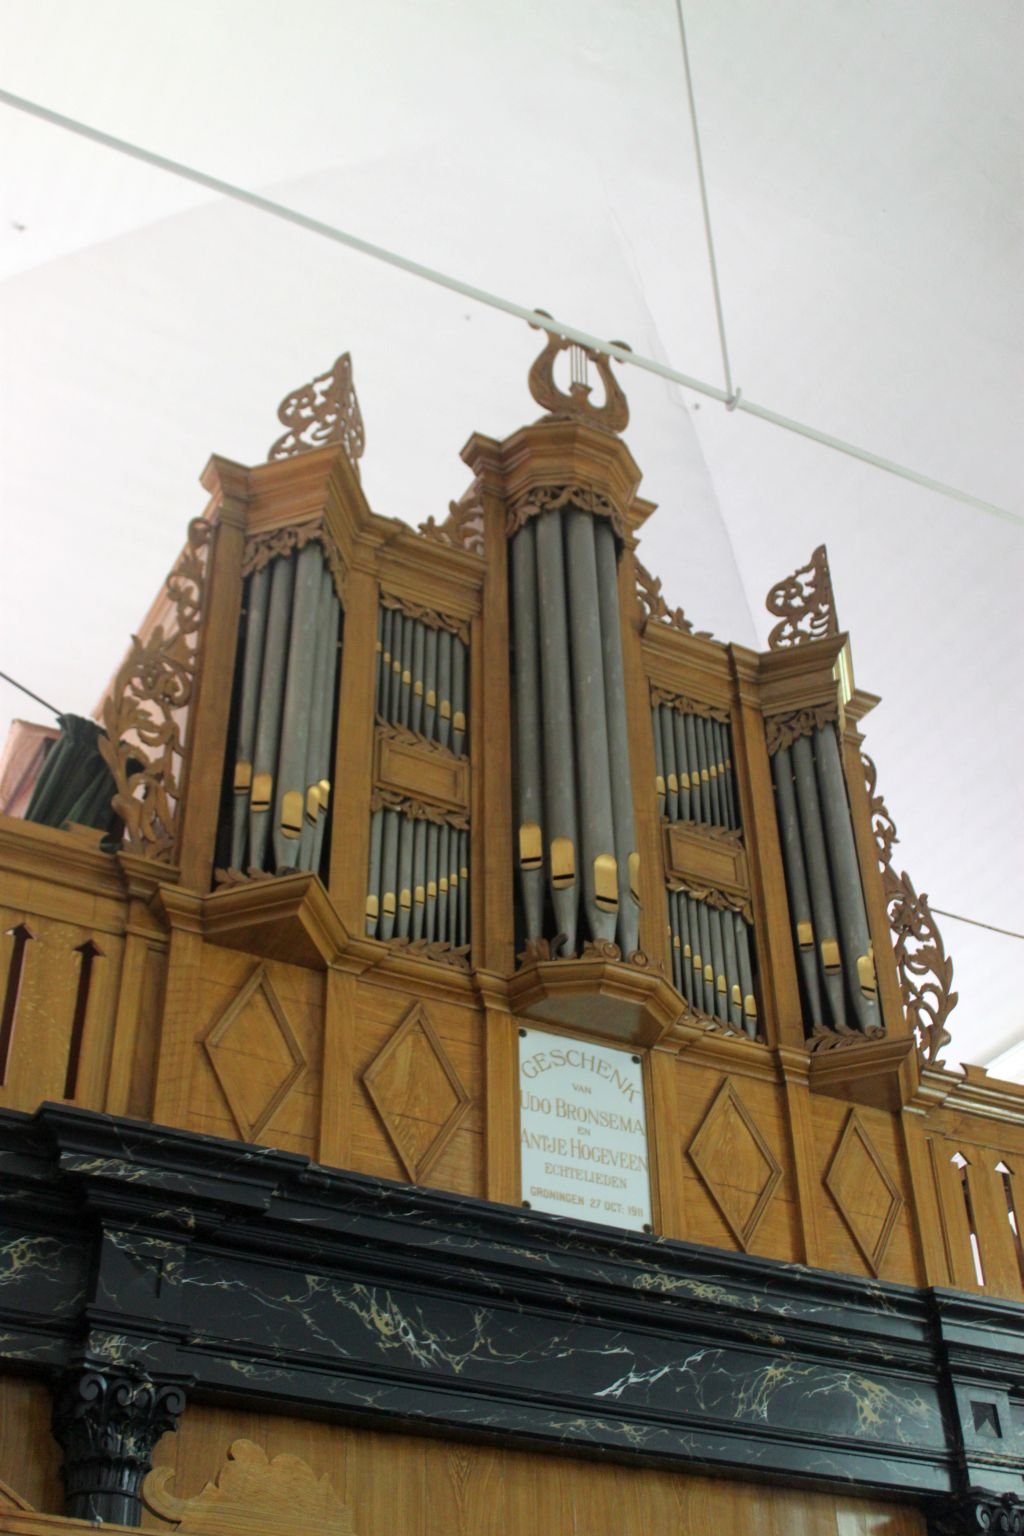 Foto van het orgel in de kerk gemaakt door Michiel van 't Einde op 17 augustus 2012. Relikwi.nl.